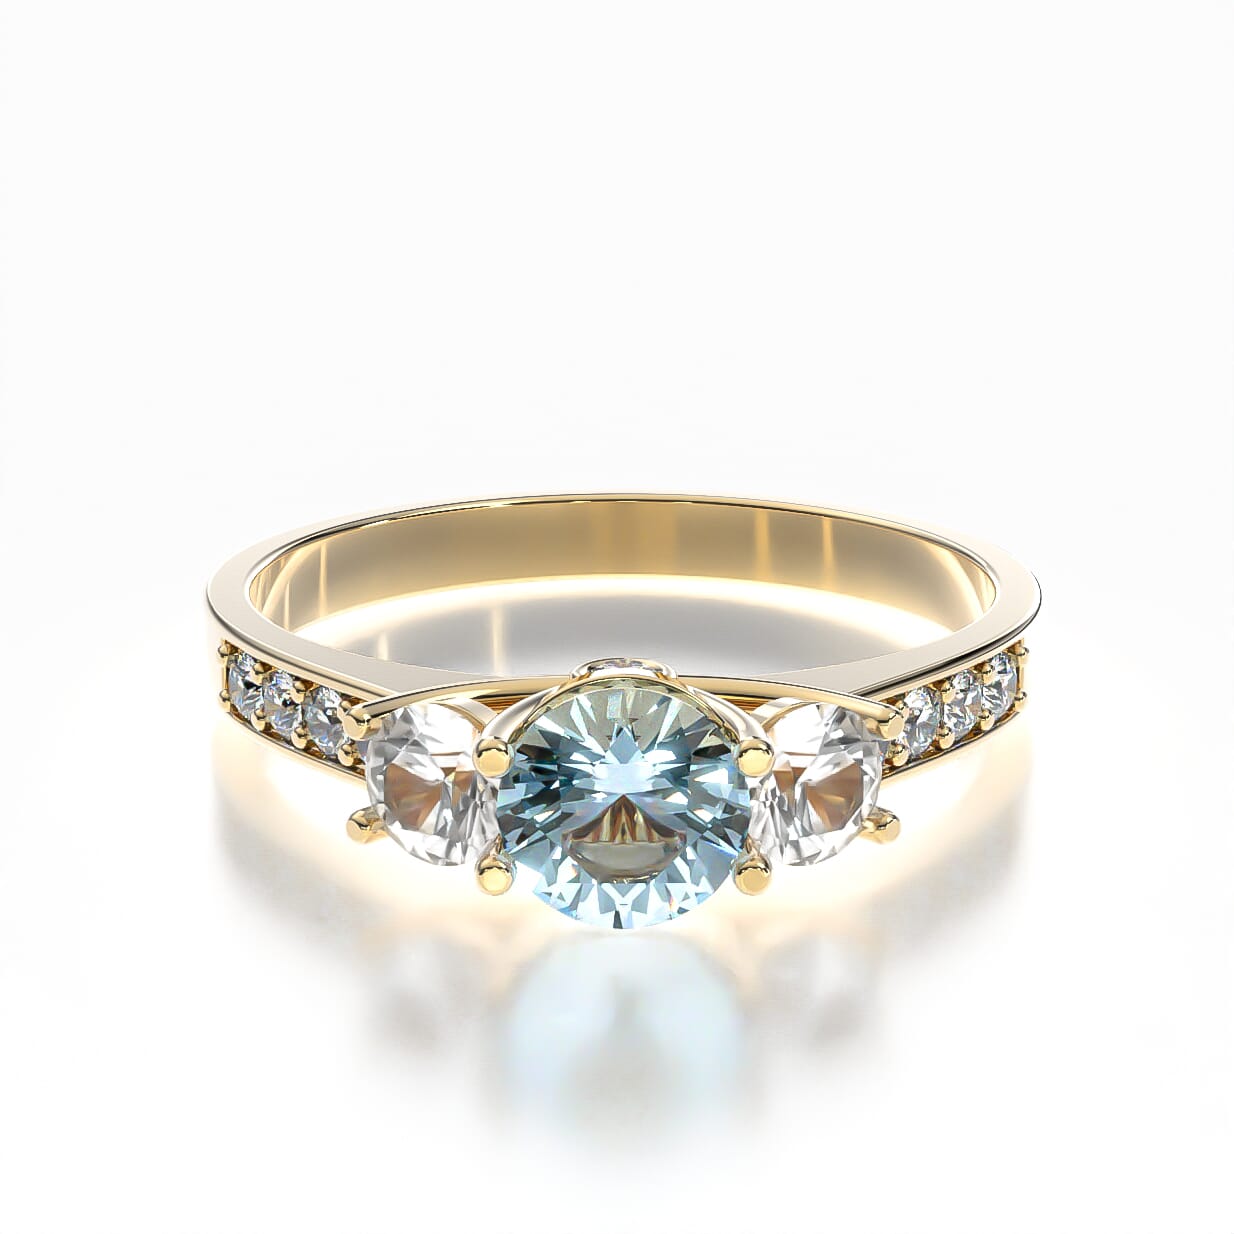 Dream engagement ring: gold, aquamarine